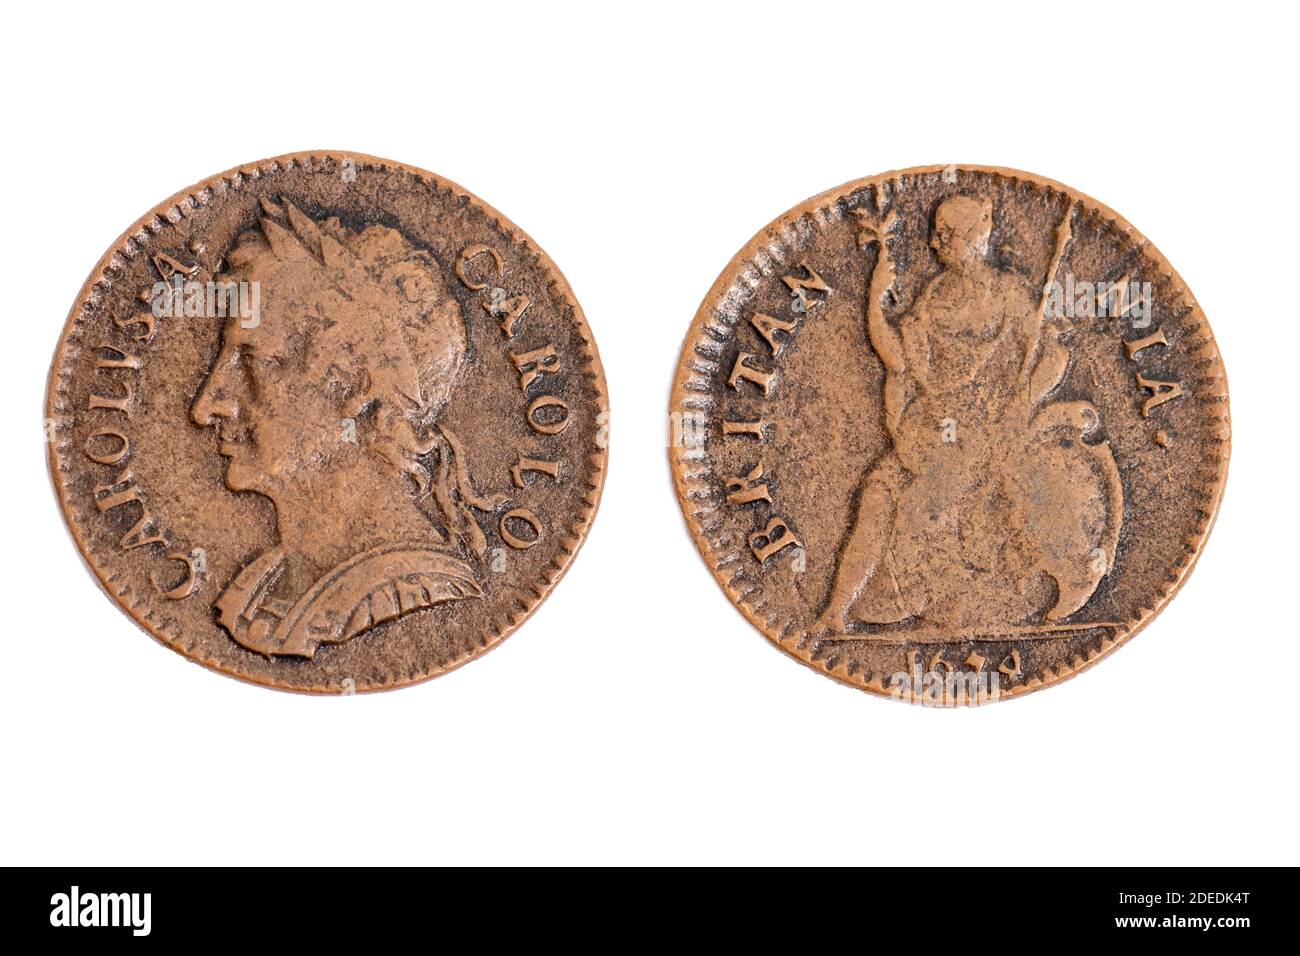 Vieux millésime pièces de monnaie anciennes King Charles II une farthing Pièce de cuivre Britannia patron de la Grande-Bretagne 1674 Banque D'Images